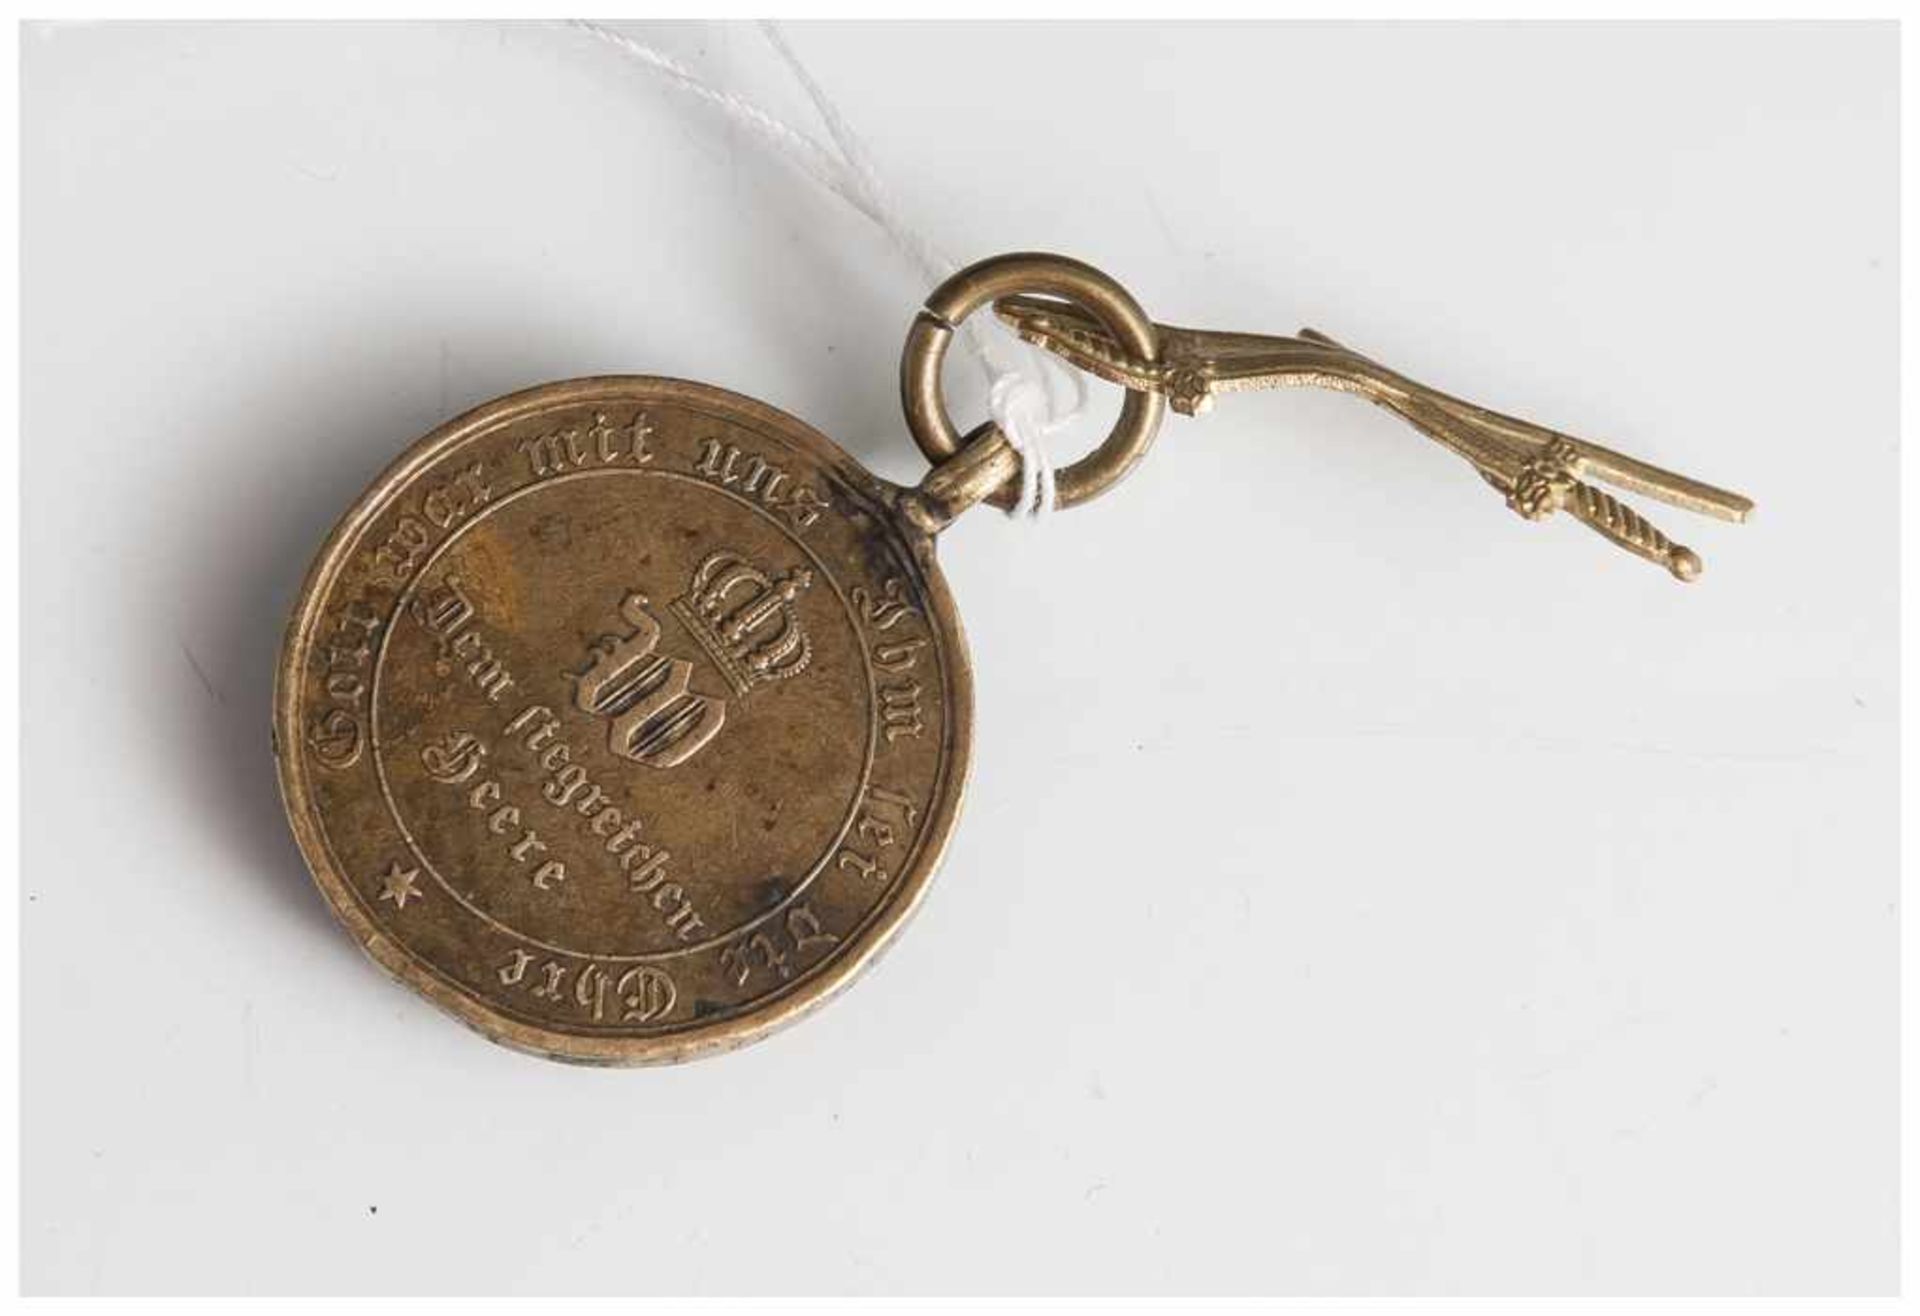 Medaille Preußen, 1870/1871, dem siegreichen Heere, Randschrift "Gott war mit uns Ihm sei die